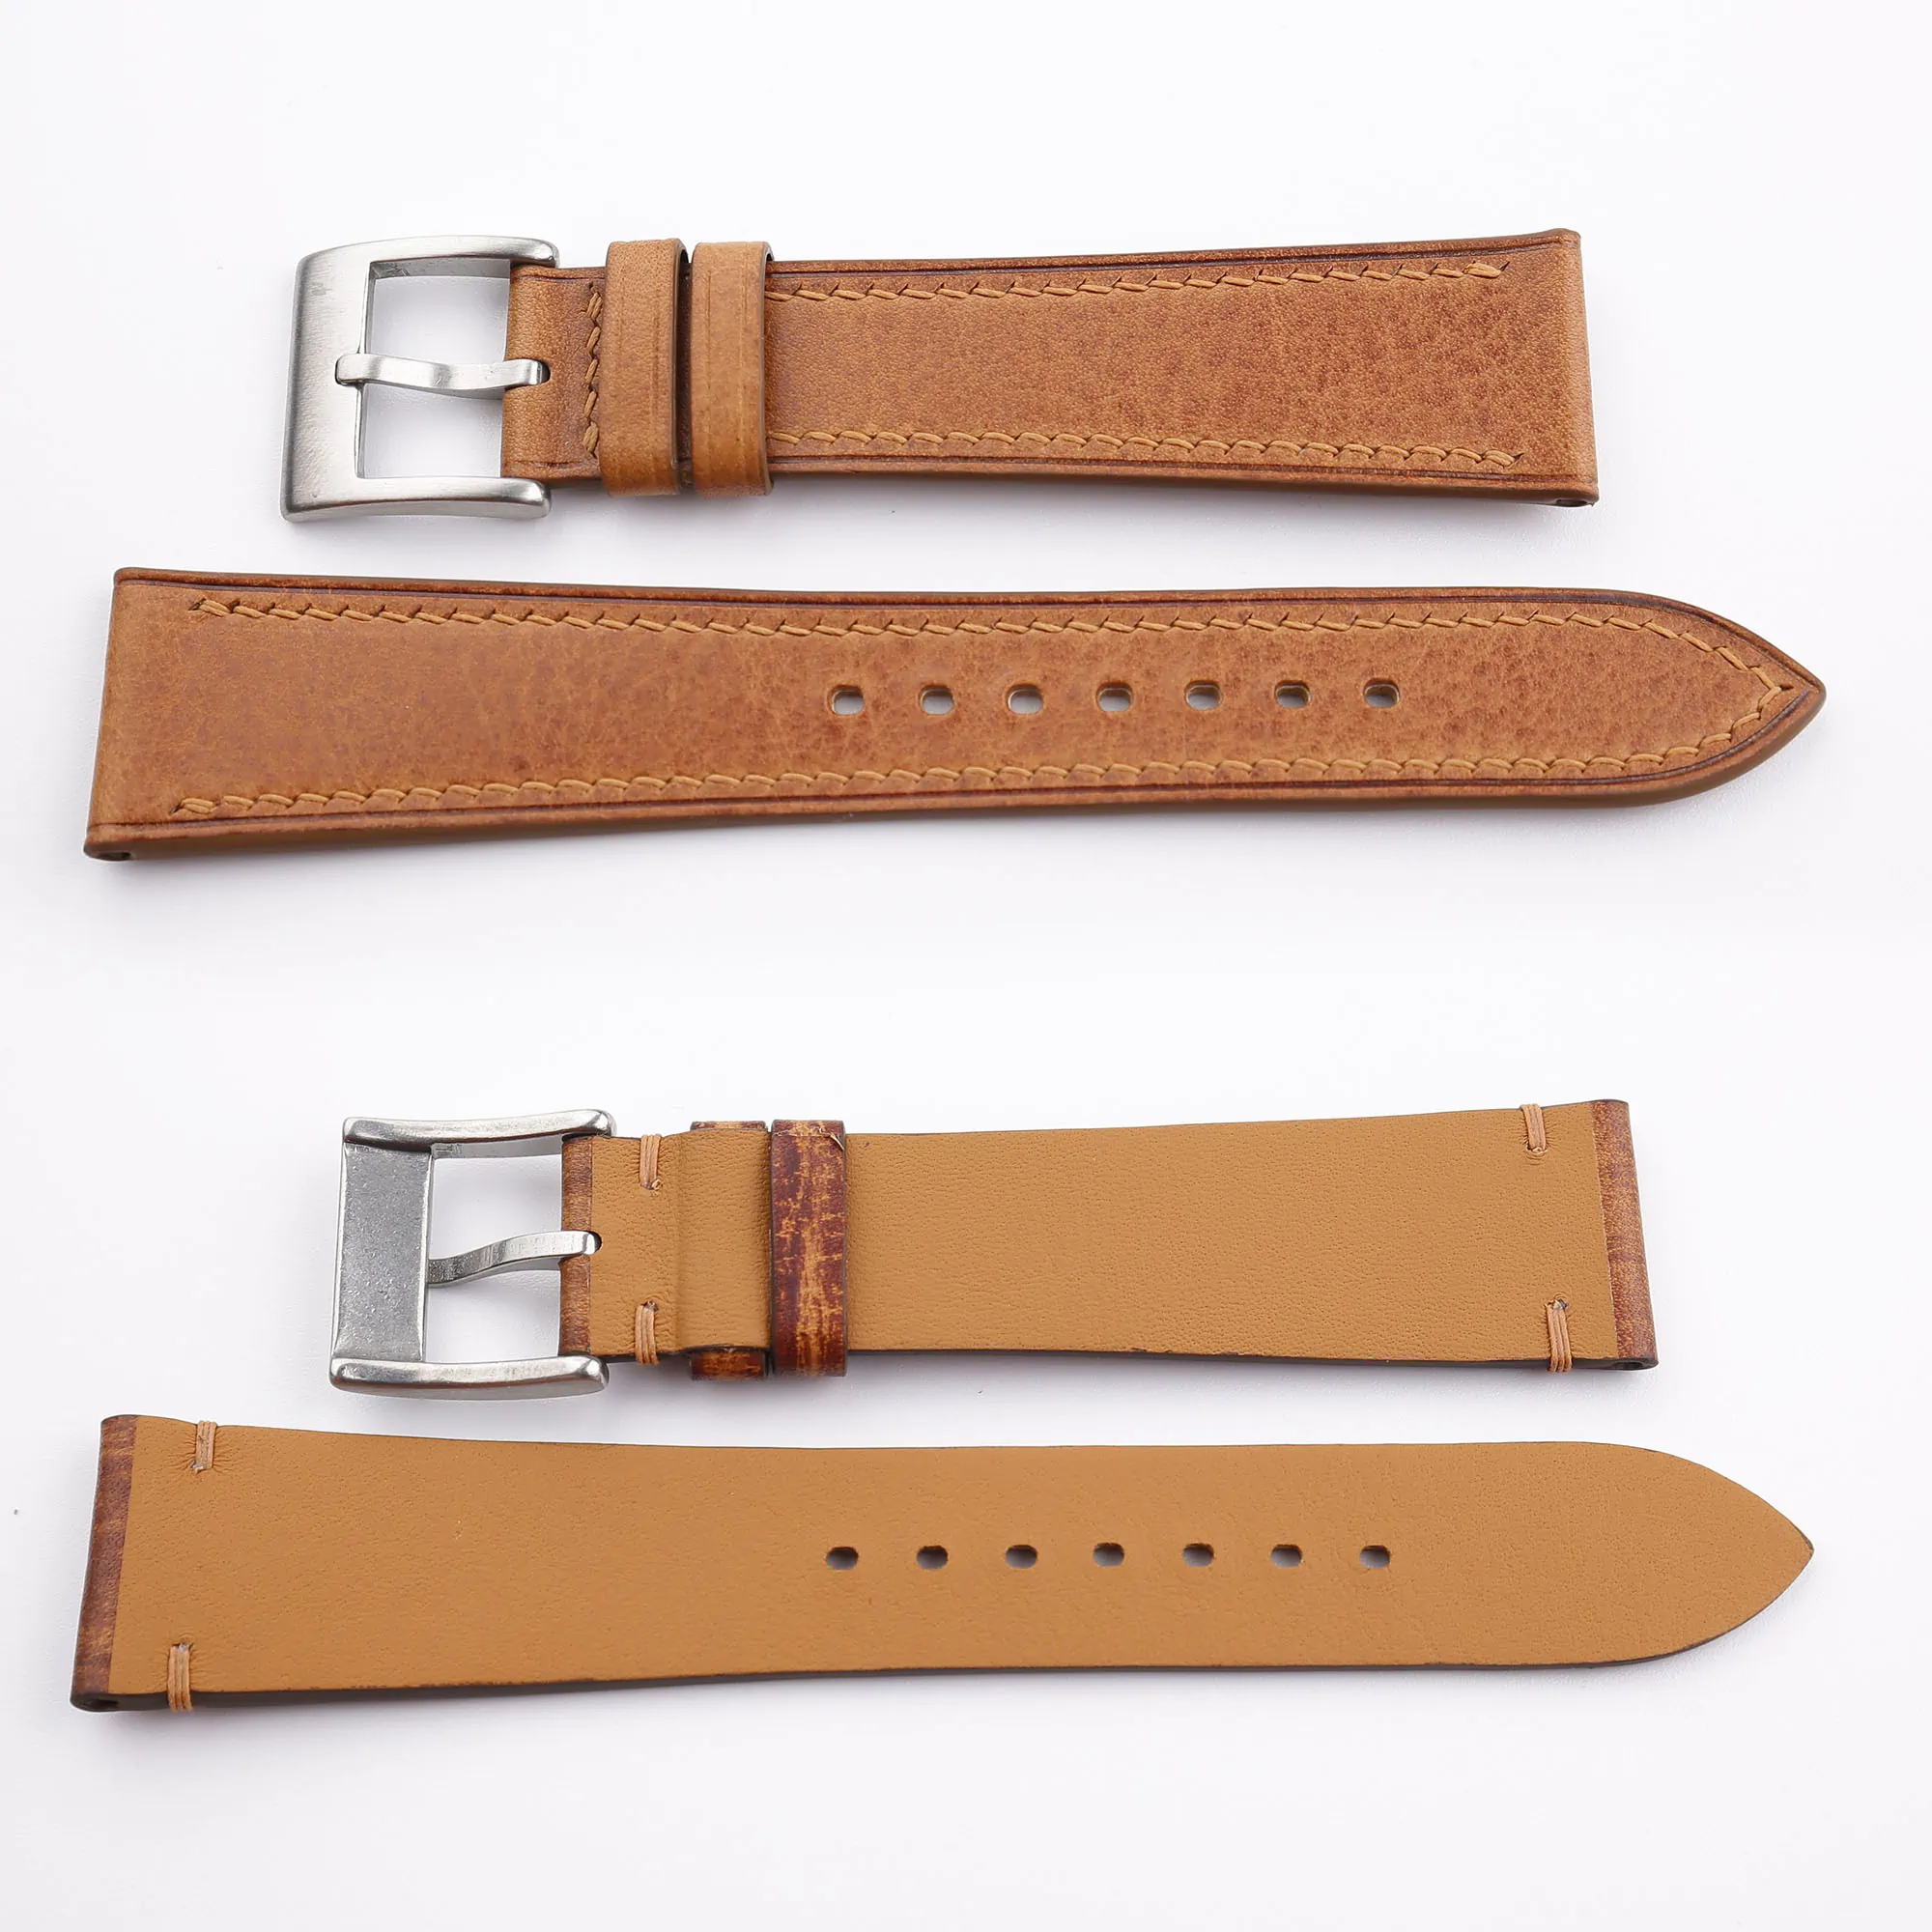 Golden Vachetta Leather Watch Strap